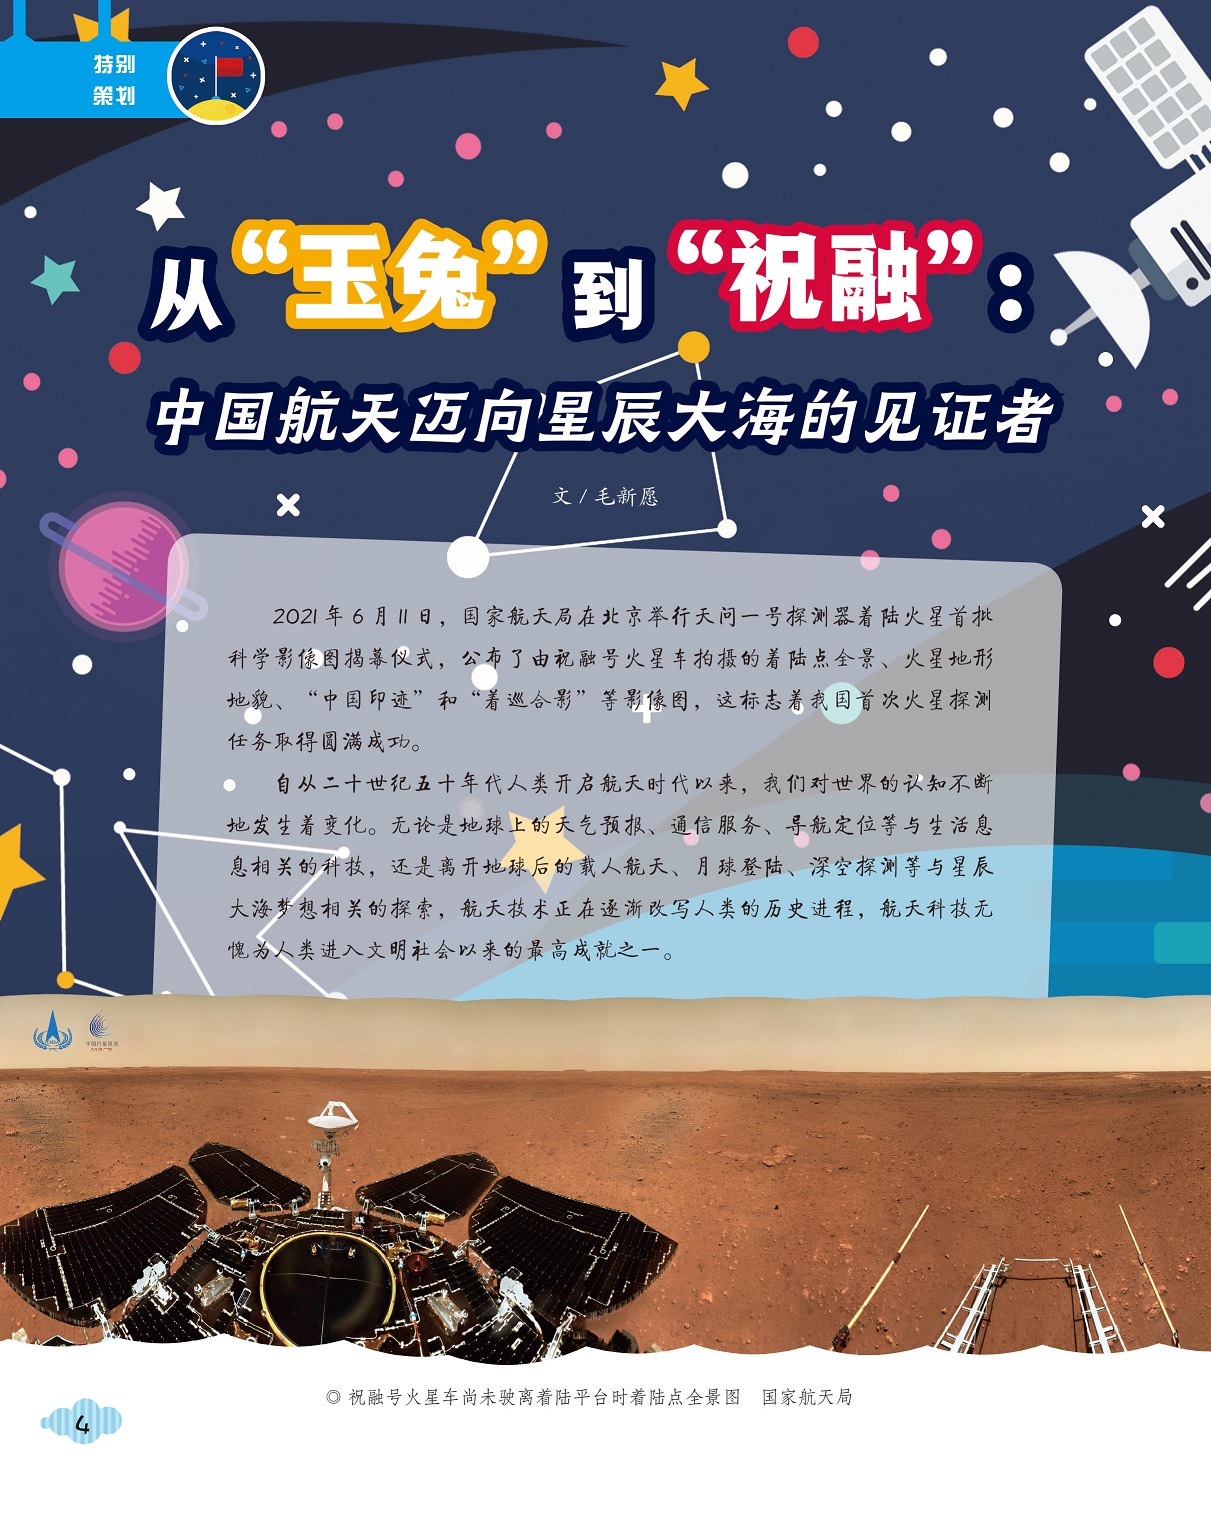 中国航天迈向星辰大海,航天技术改写人类历史